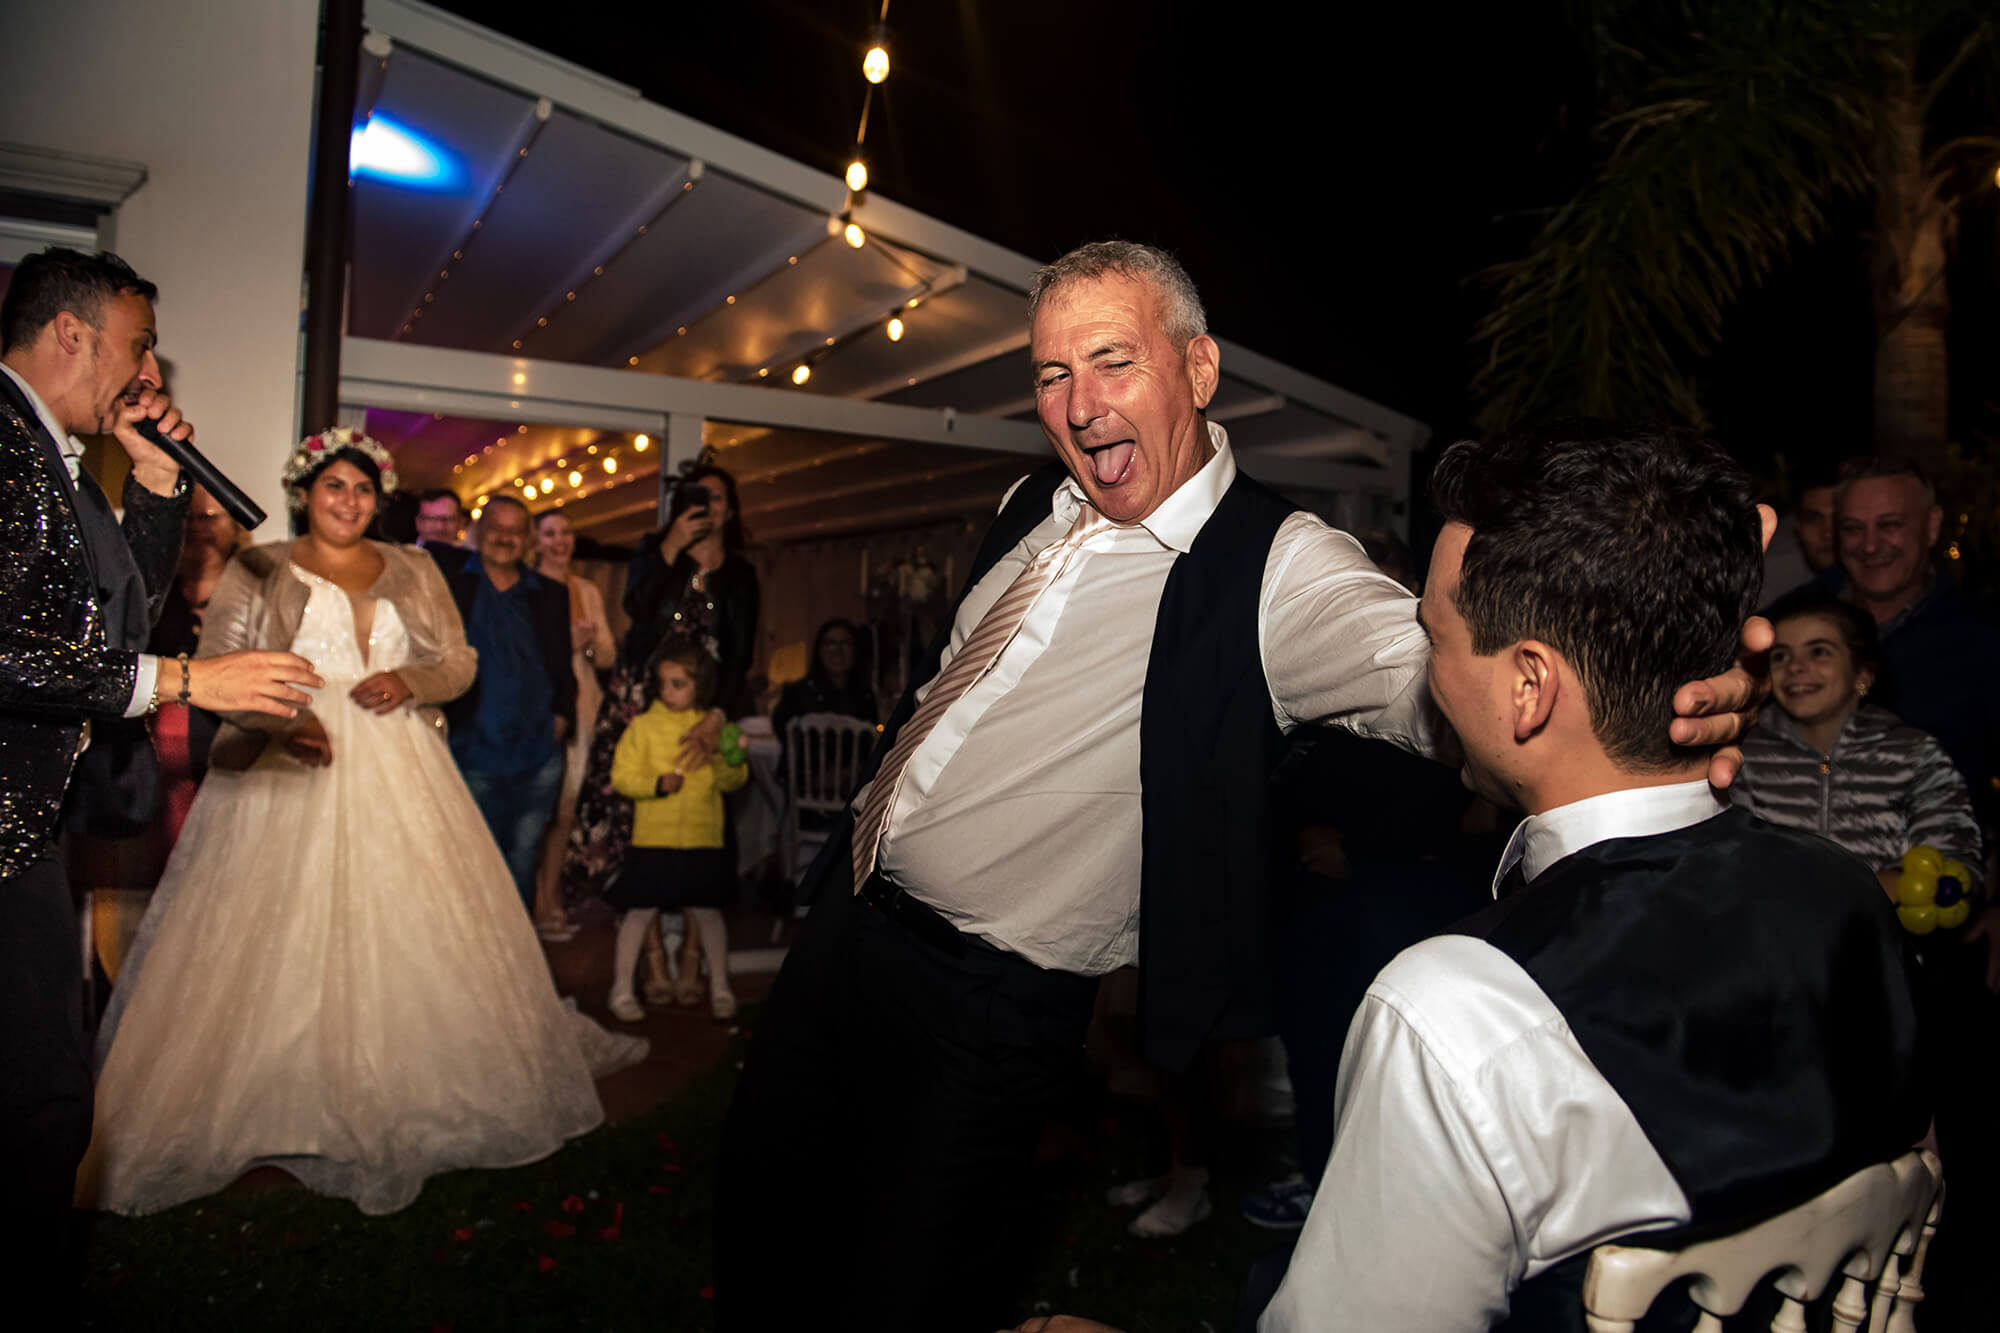 Una delle fotografie più simpatiche che abbiamo realizzato, il papà della sposa fa una lap dance allo sposo, foto realizzata in una location per matrimoni a Cipressa, in provincia di Imperia.